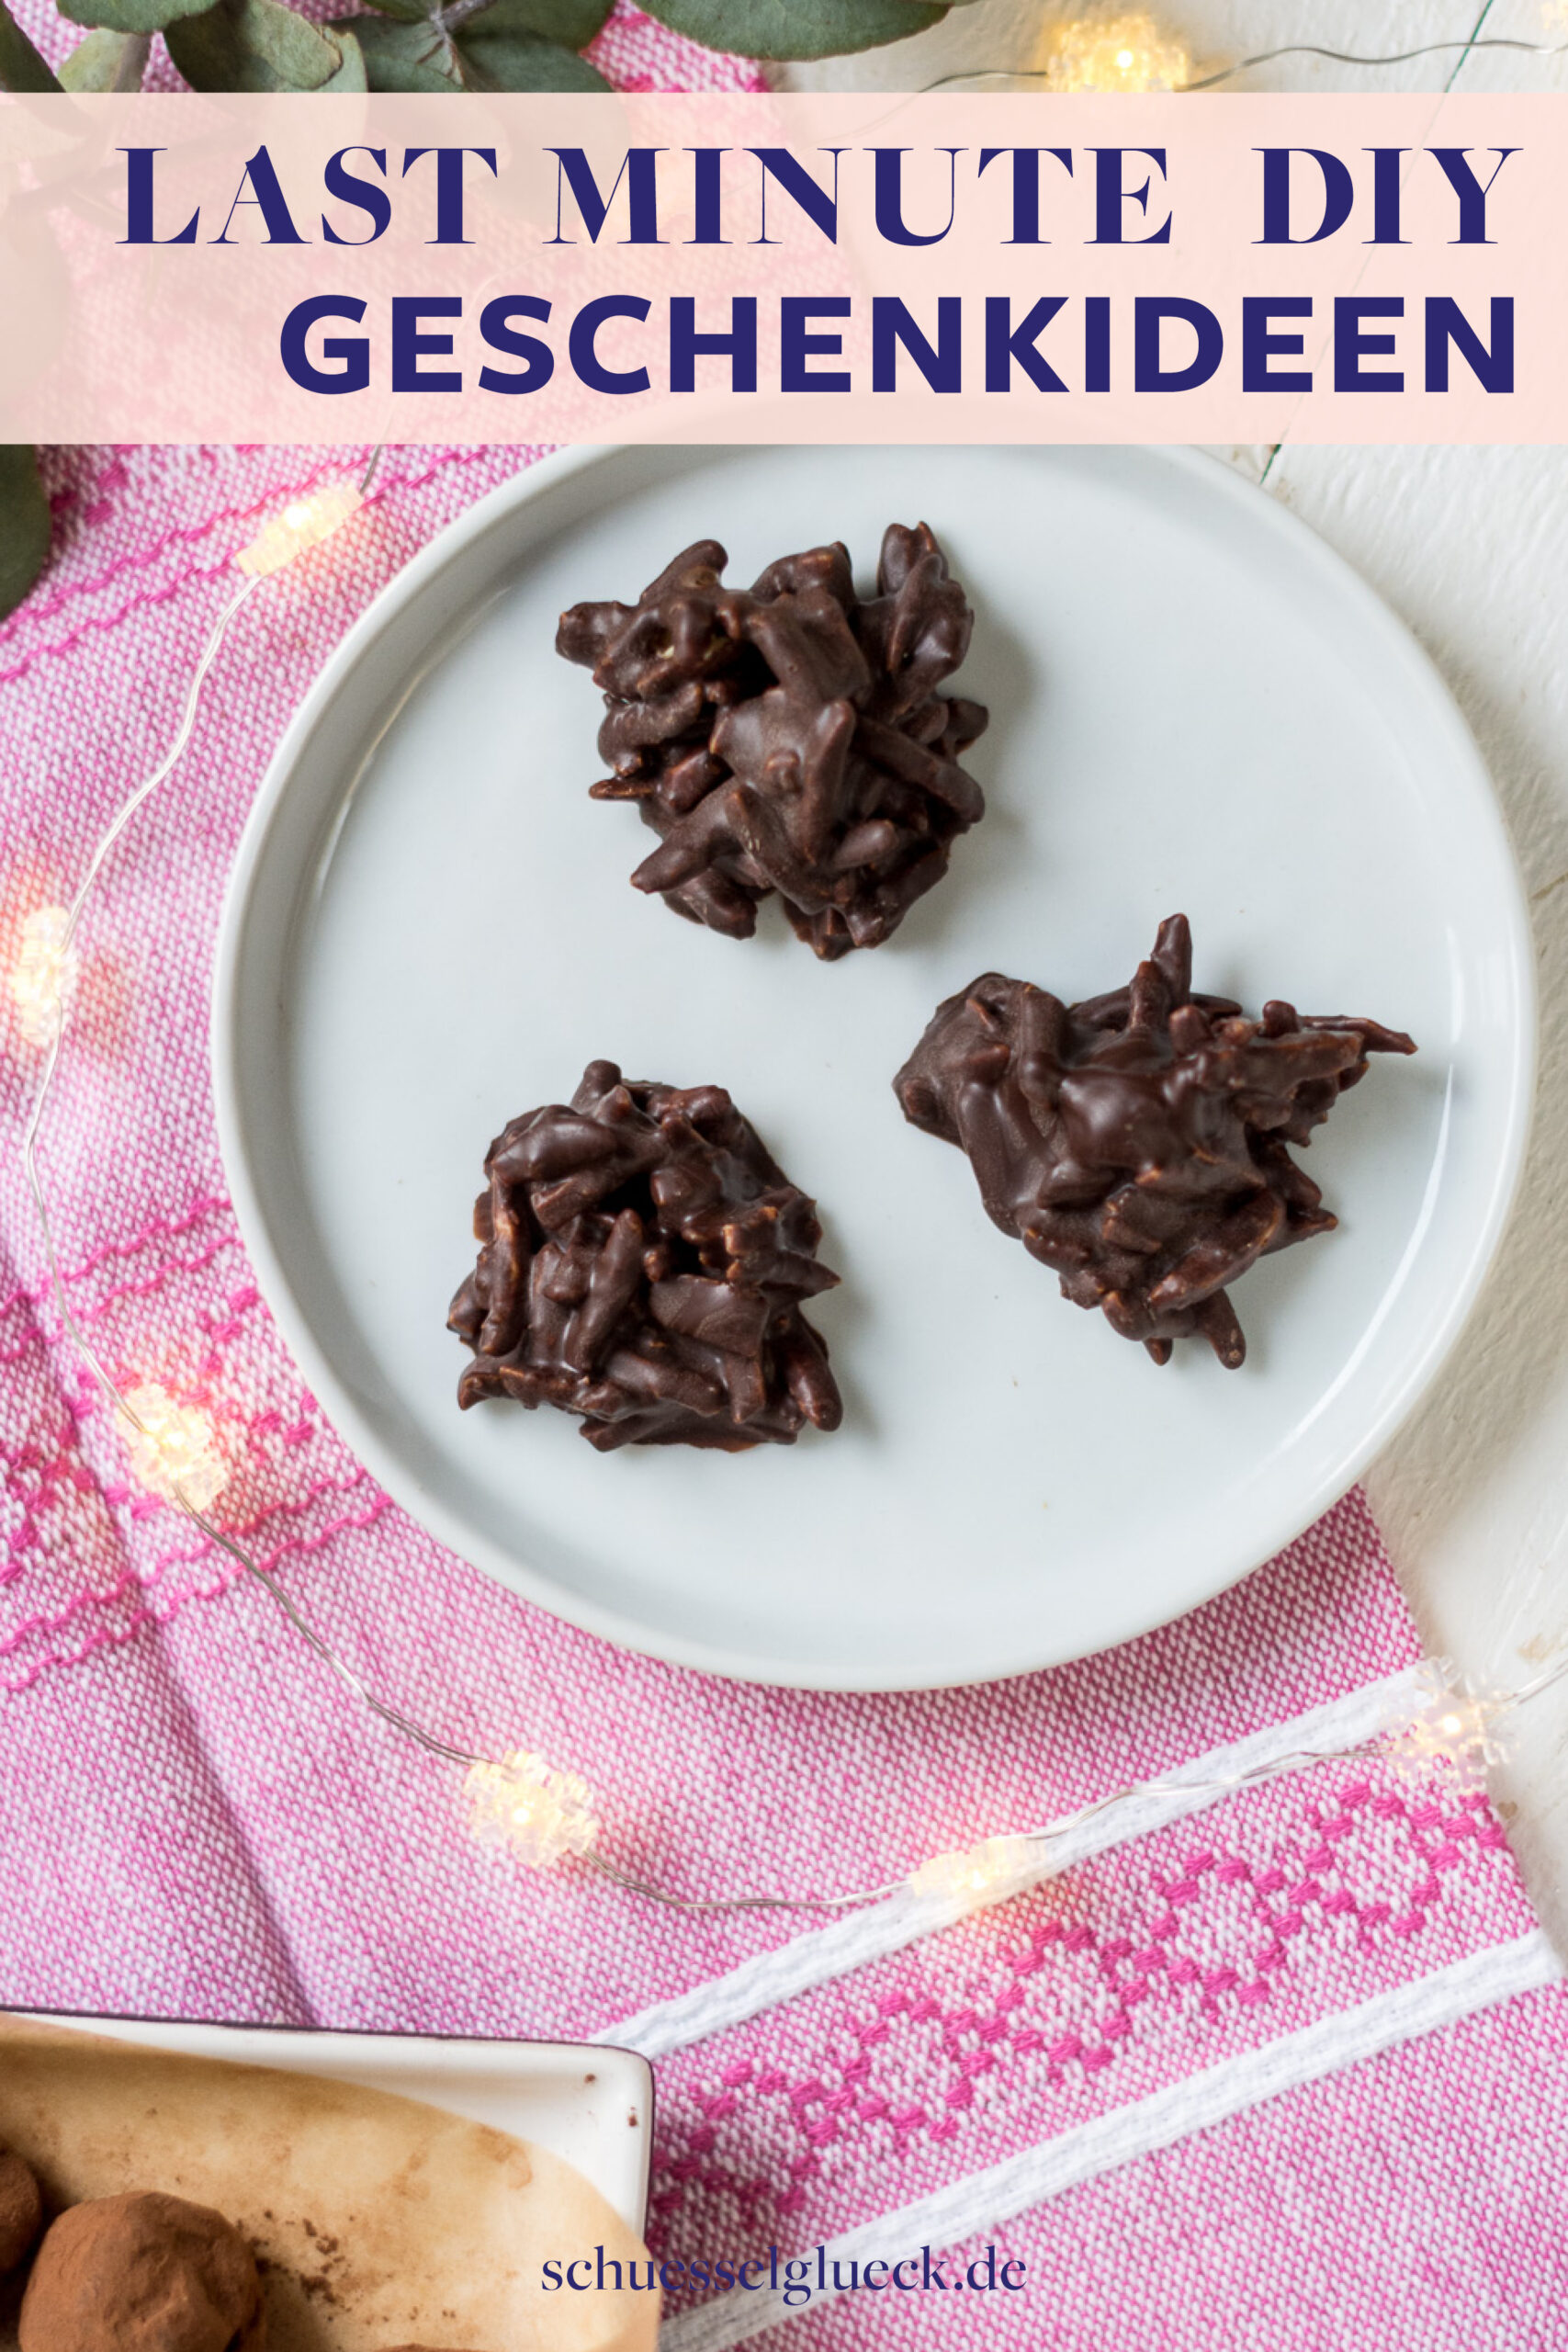 Last Minute DIY Geschenkideen aus Schokolade – superschnell und einfach gemacht!